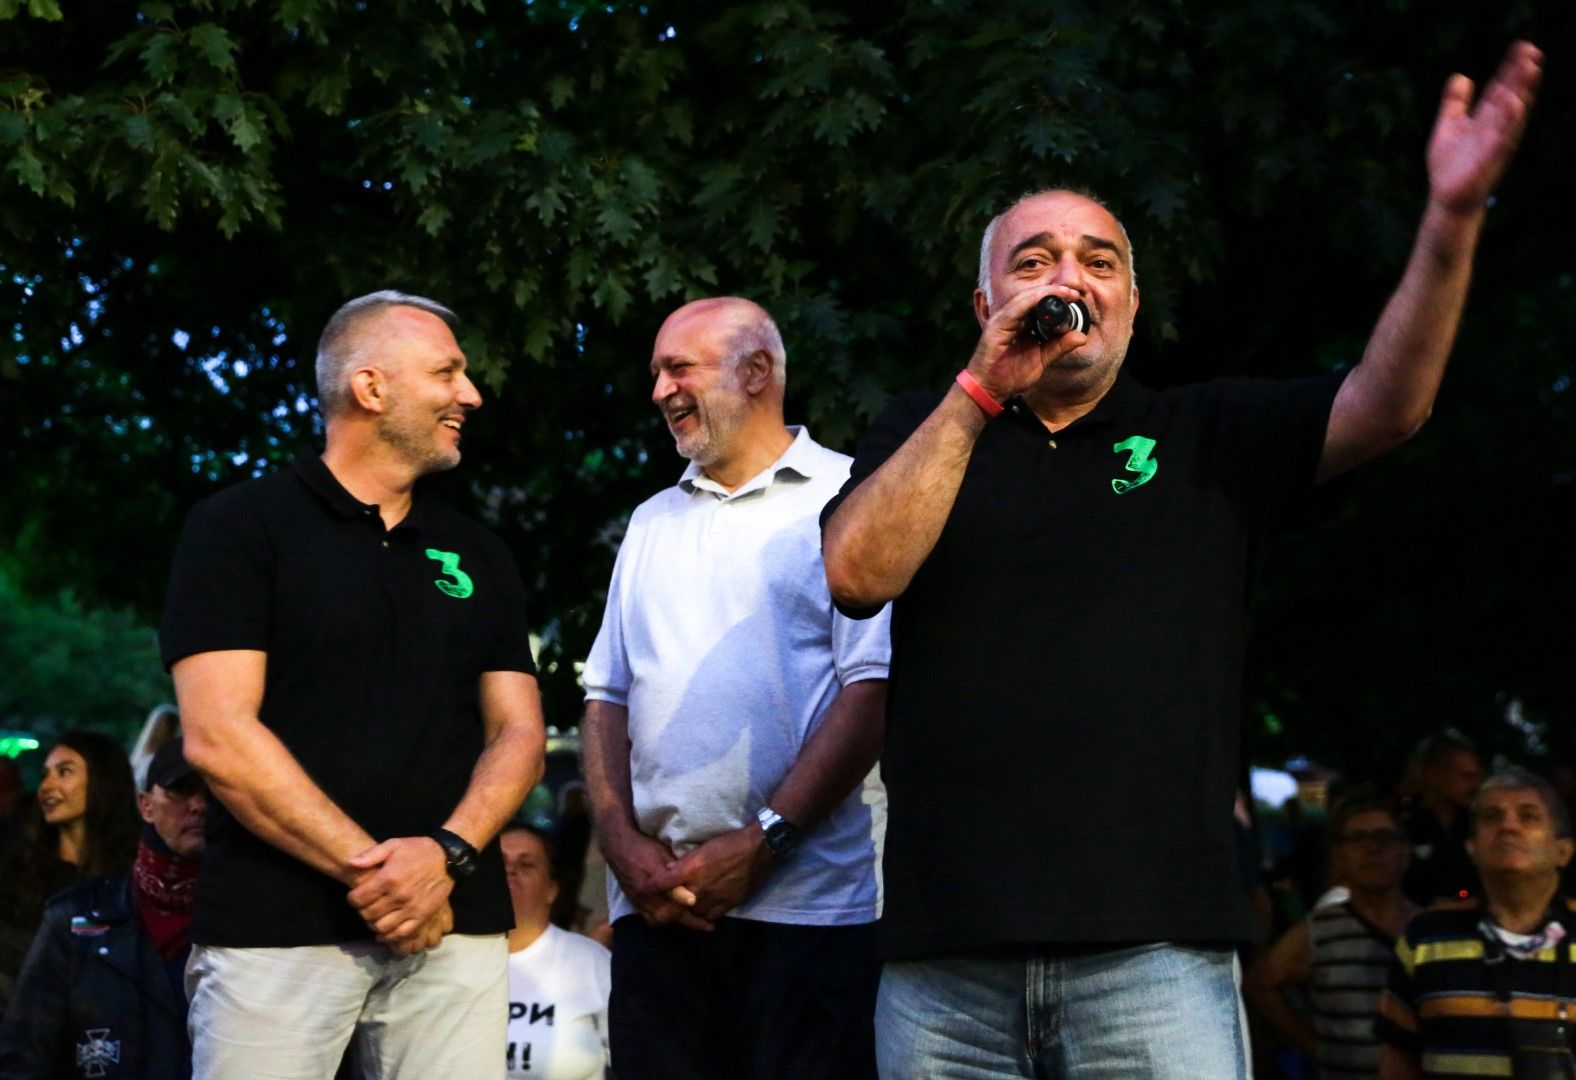 Николай Хаджигенов (ляво), Арман Бабикян (дясно) и Велислав Минеков - т. нар. отровно трио. Напрежението на протеста вчера вечерта е в резултат на грозна театрална постановка на властта, твърди Арман Бабикян